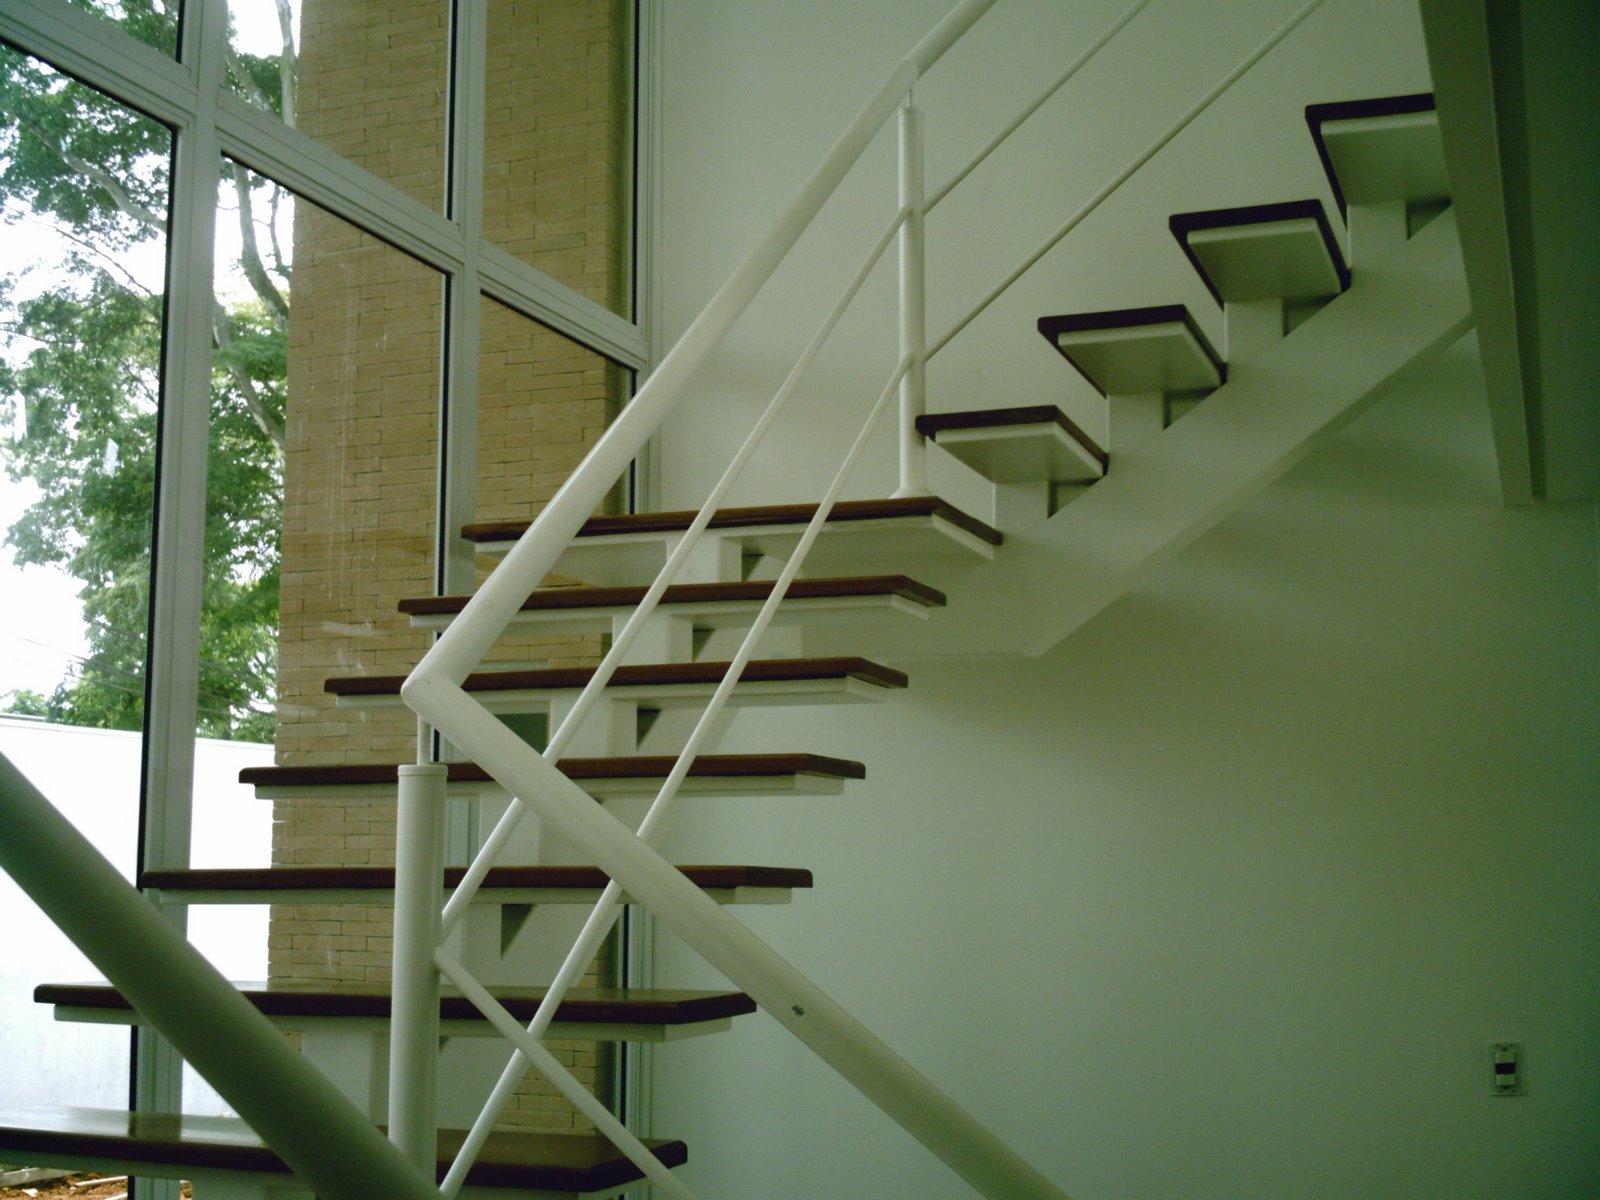 escadas de madeira residencial